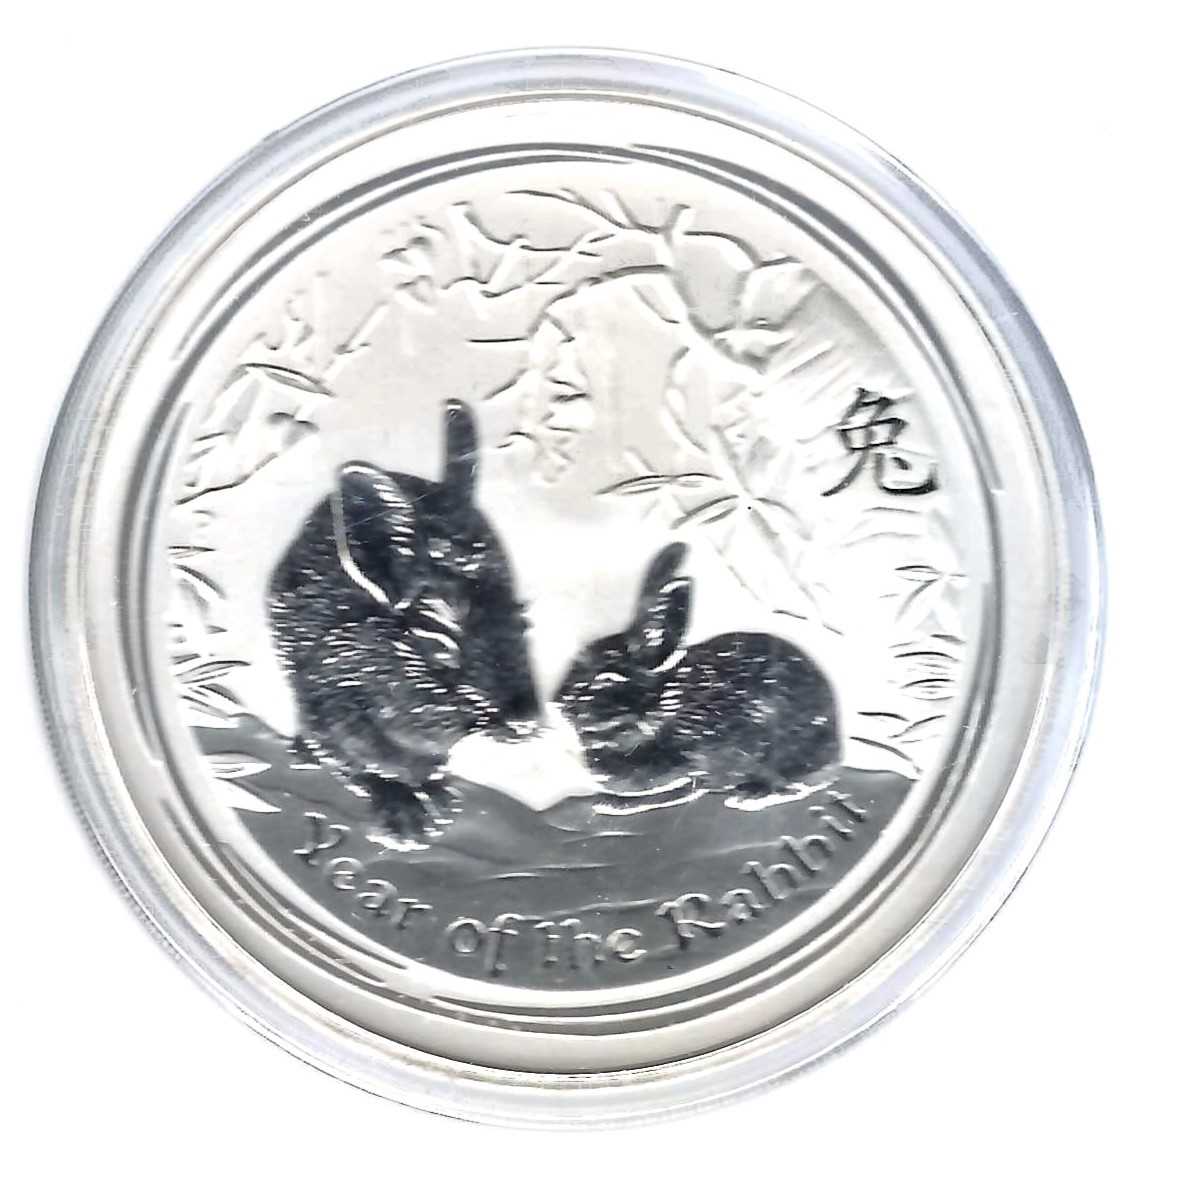  Australien 10 Dollar Y.o.t. Rabbit 2011 ST 10 Unzen Silber Münzenankauf Koblenz Frank Maurer AB 705   